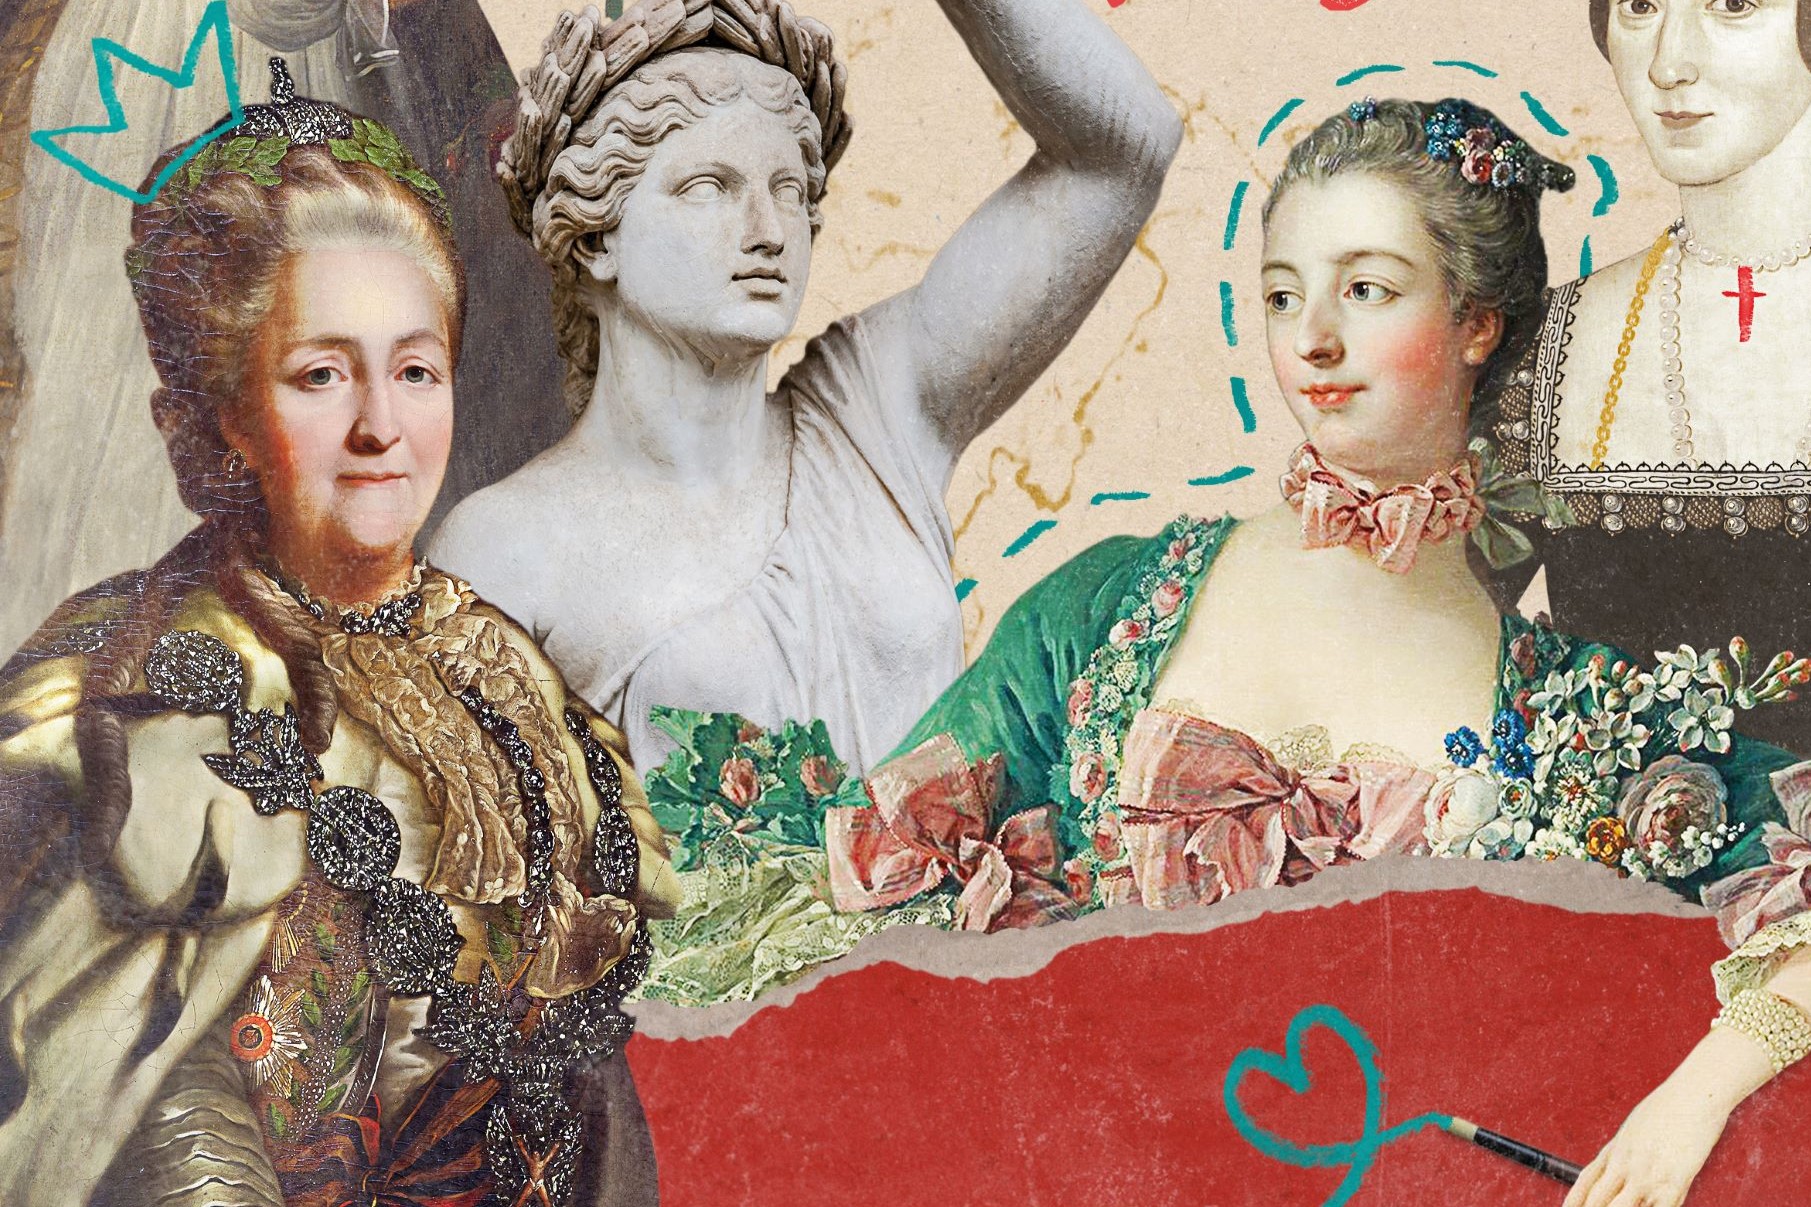 Négy nő a történelemből, akit méltatlanul rágalmaztak a „szajha” jelzővel